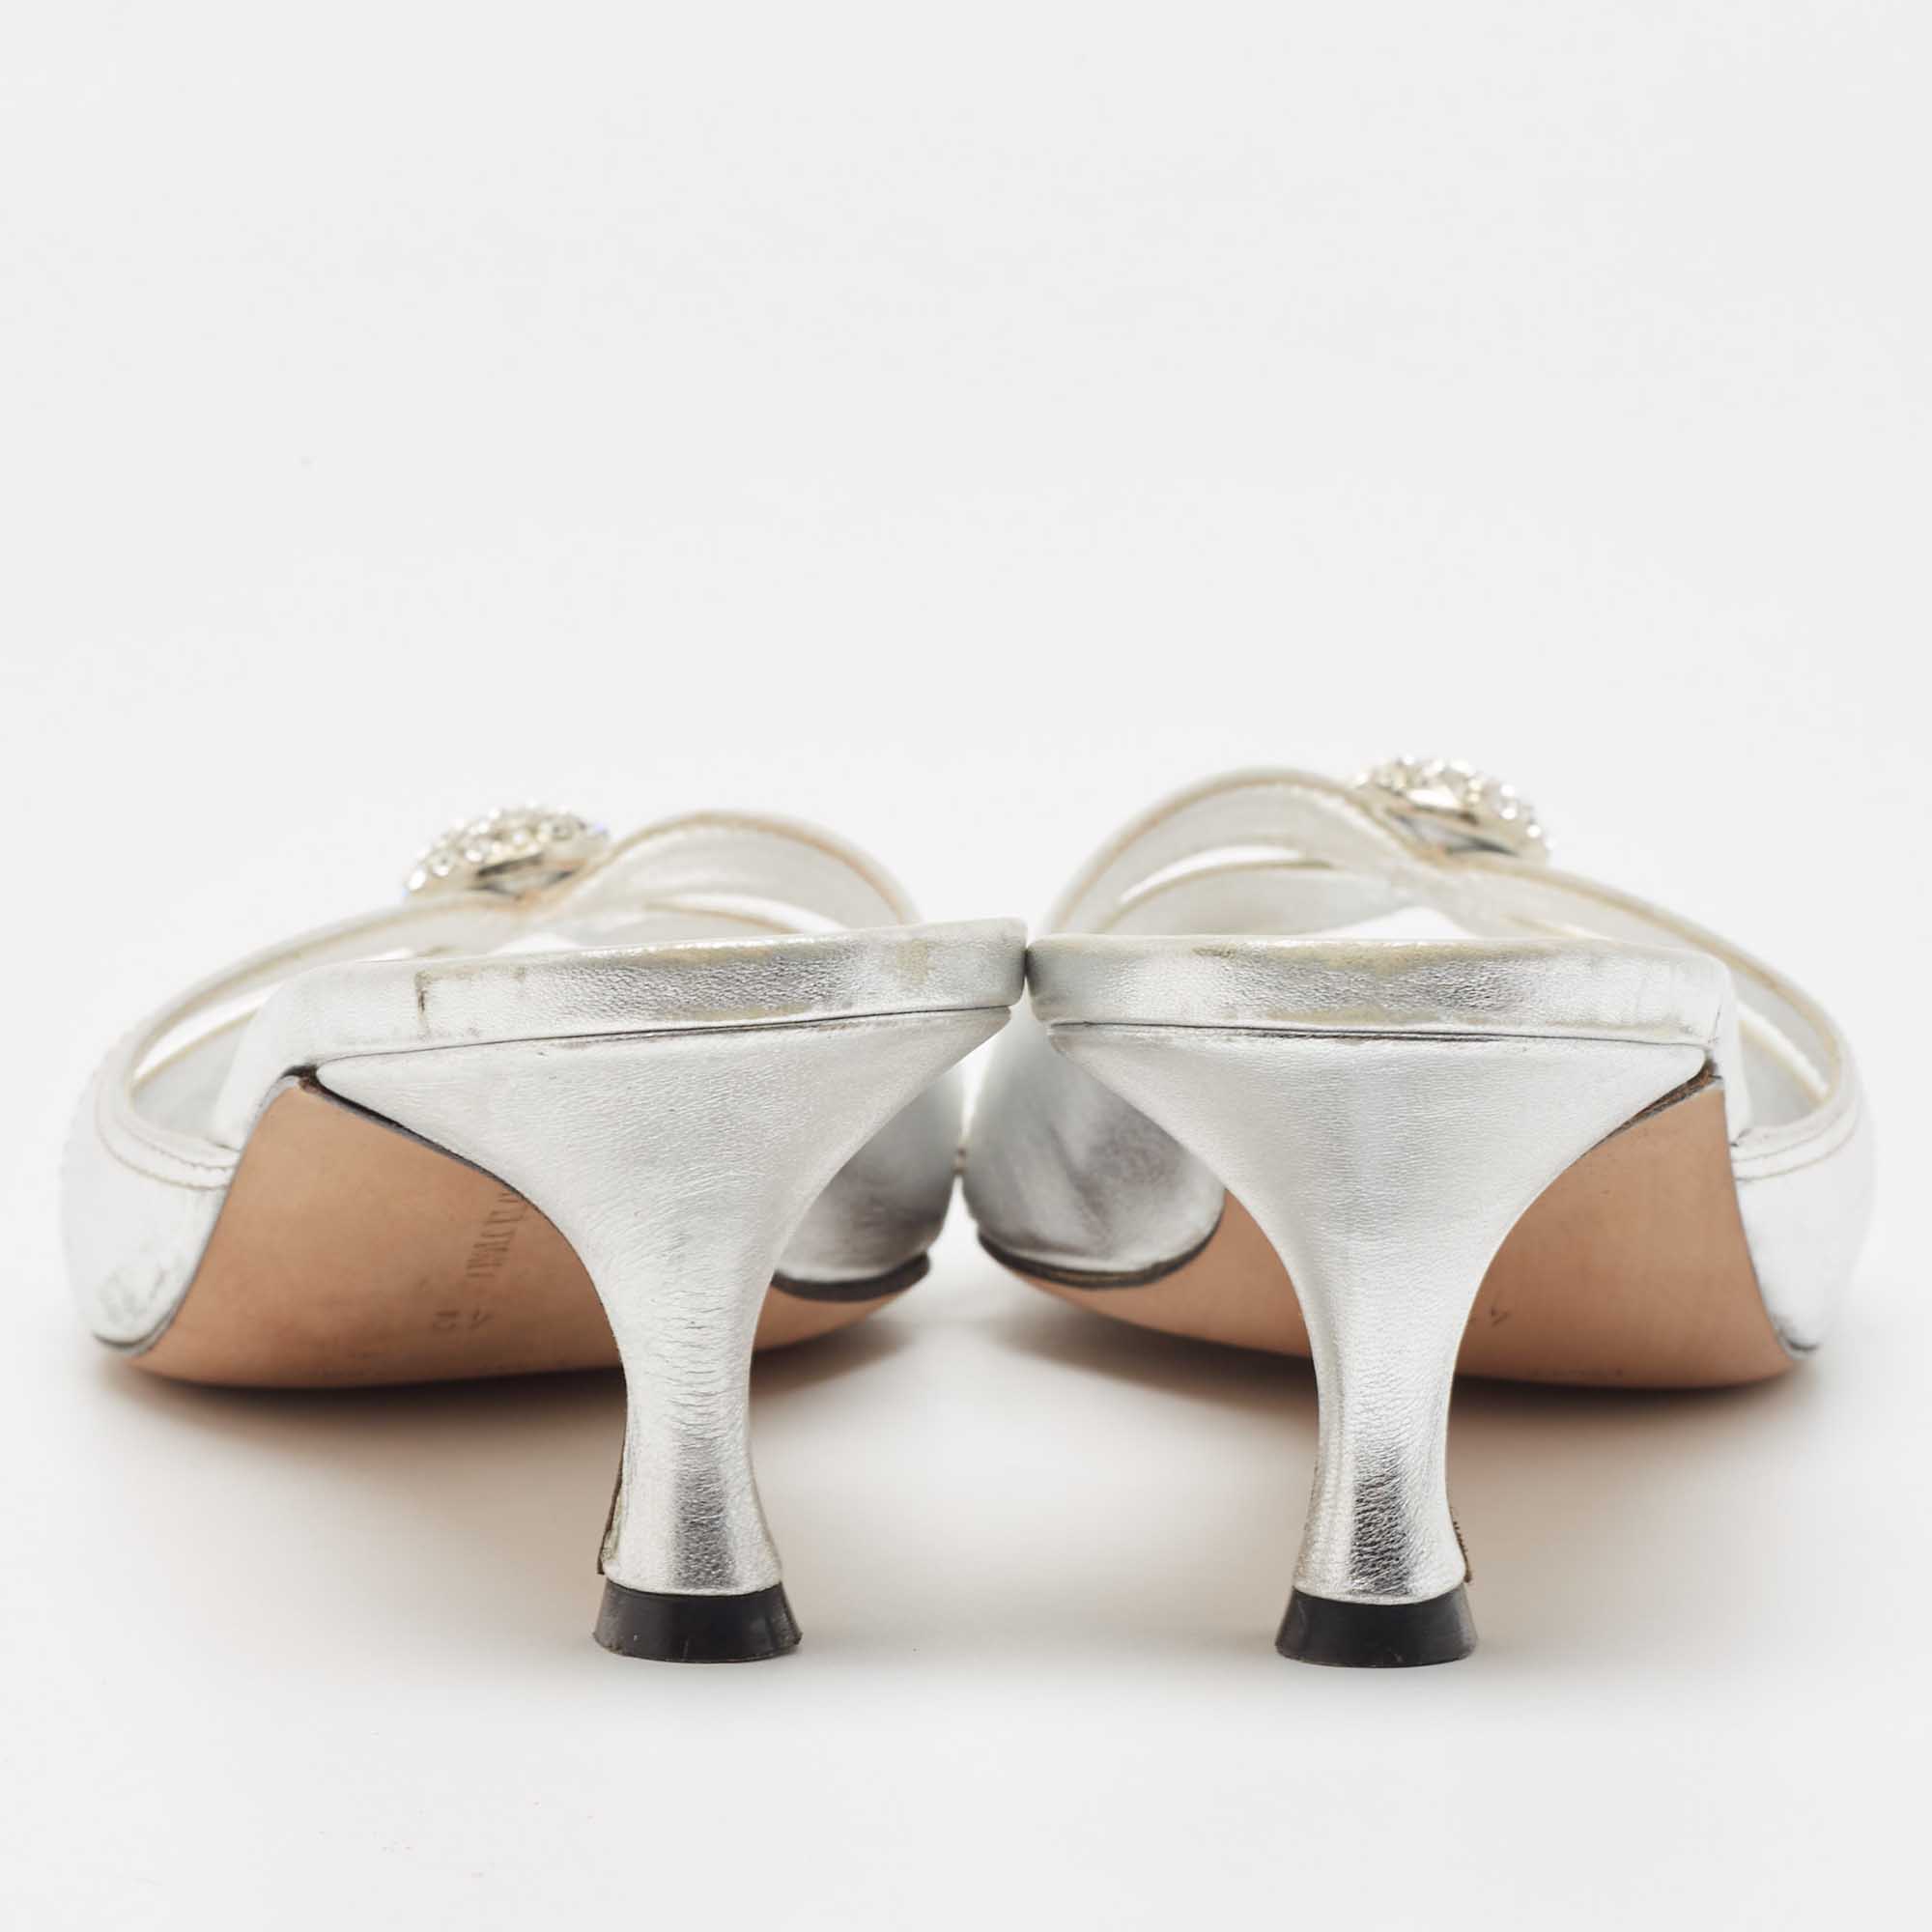 Manolo Blahnik Metallic Silver Leather Crystal Embellished Slide Sandals Size 42